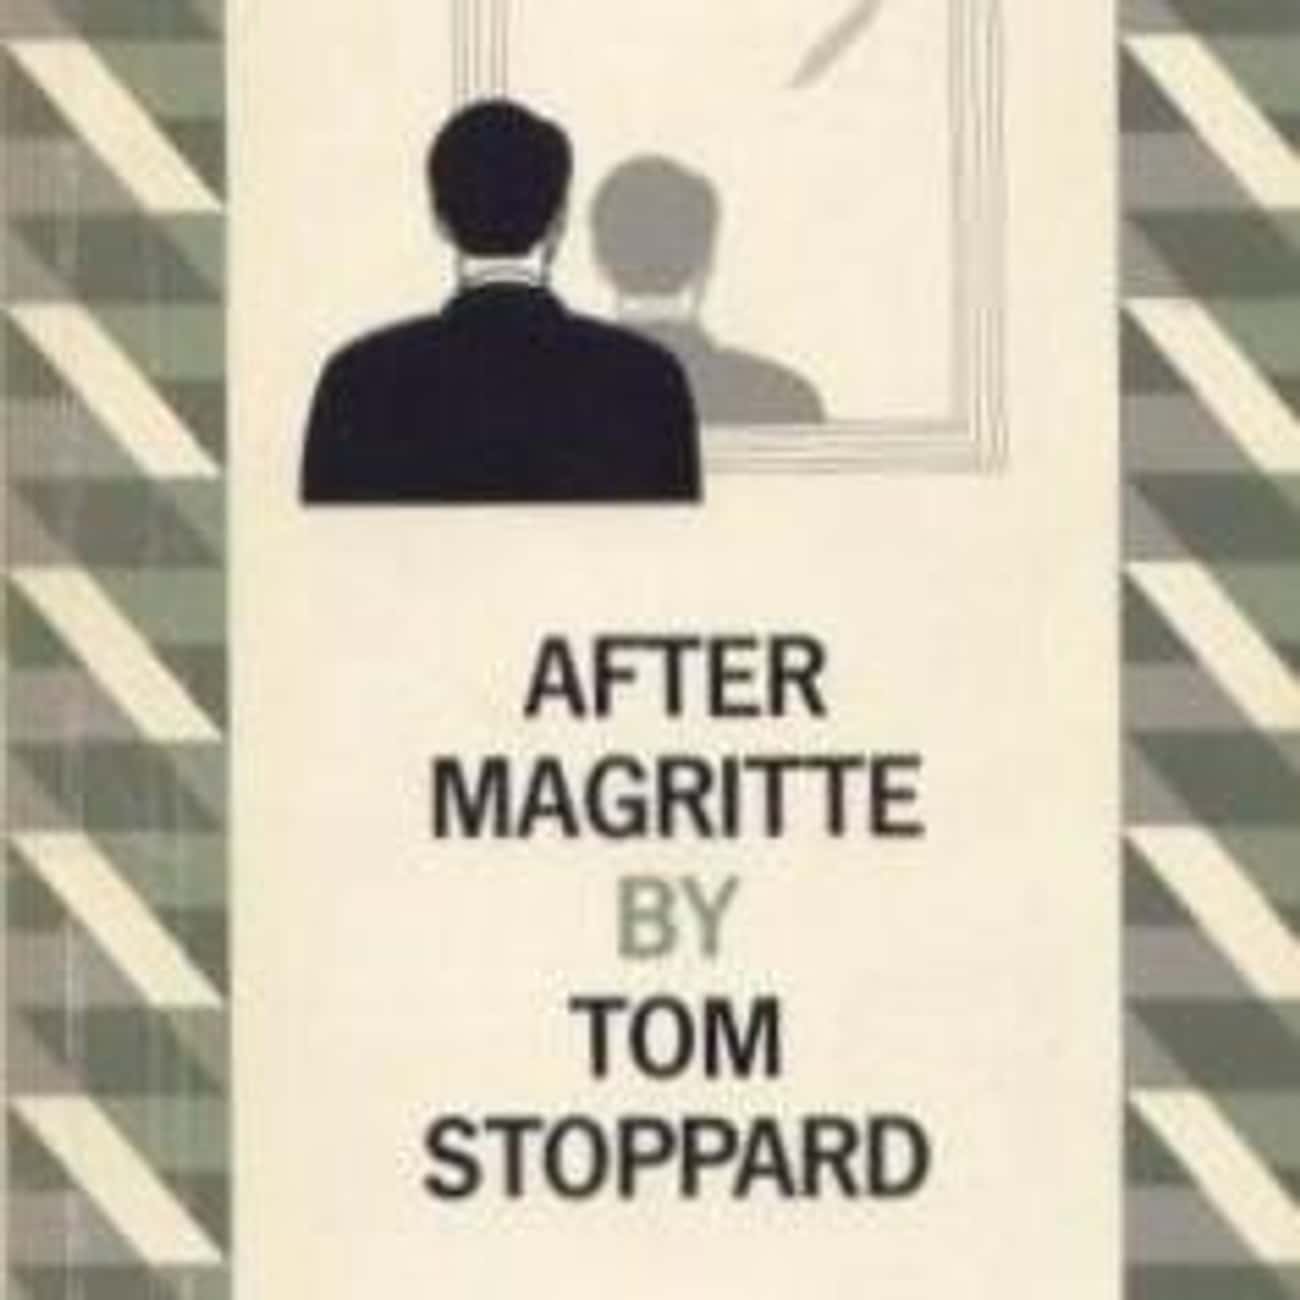 After Magritte